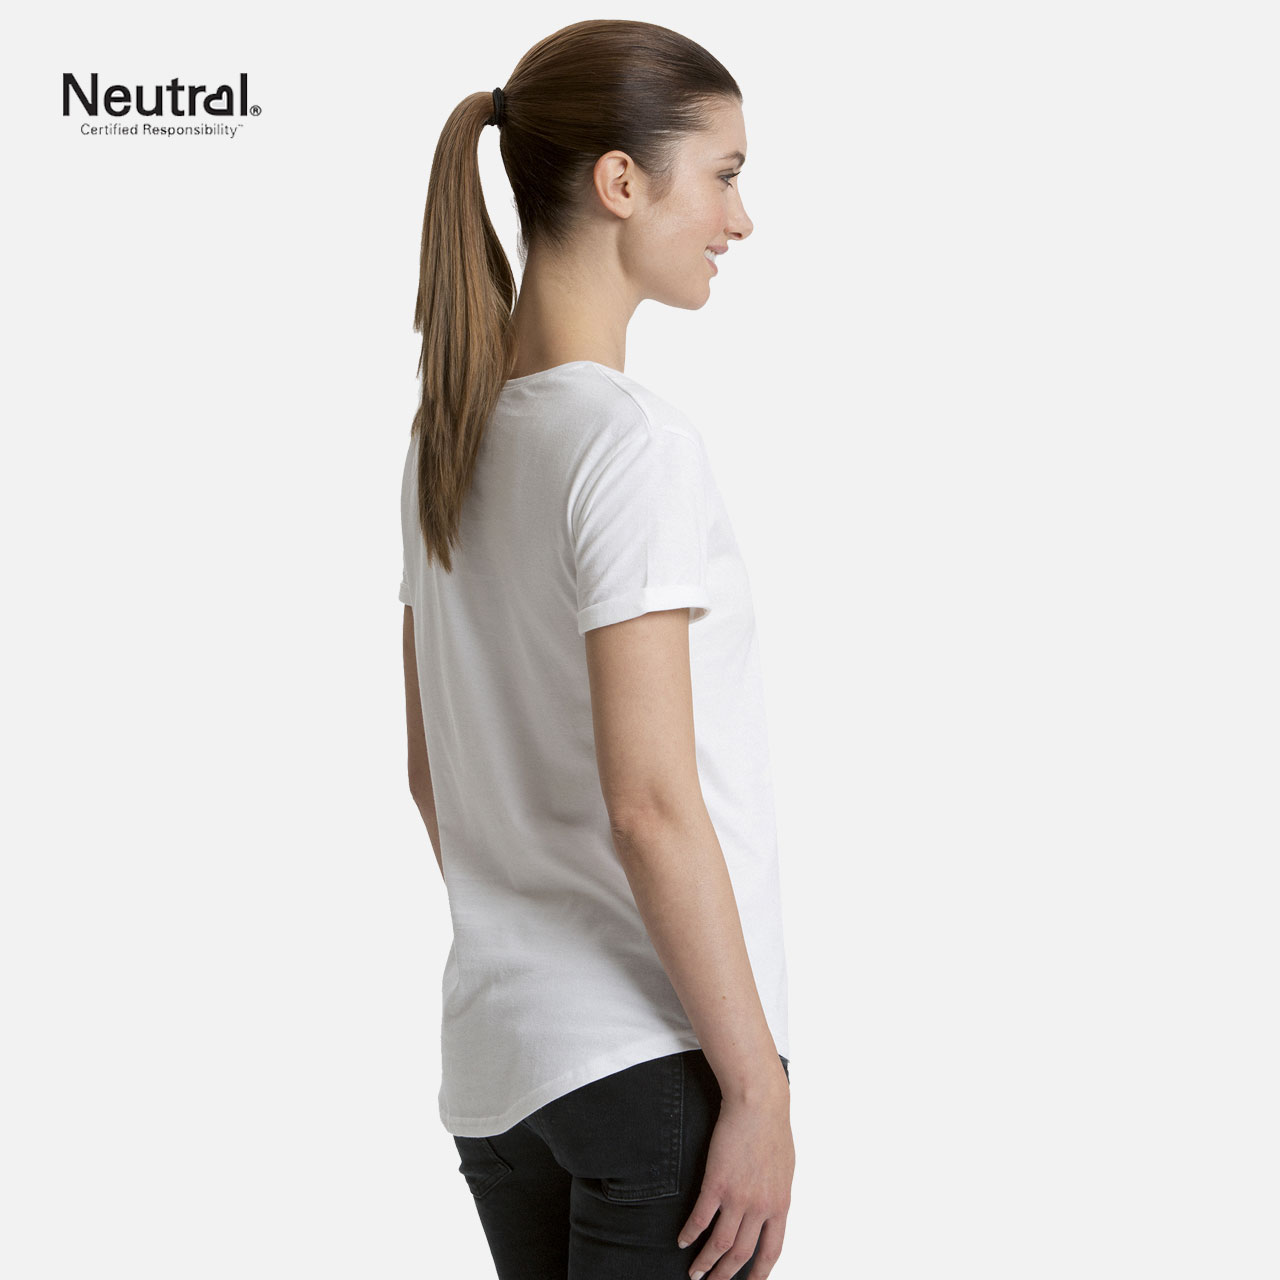 Doppelpack Ladies Roll Up Sleeve T-Shirt - Weiß / Schwarz 2XL Weiss / Schwarz